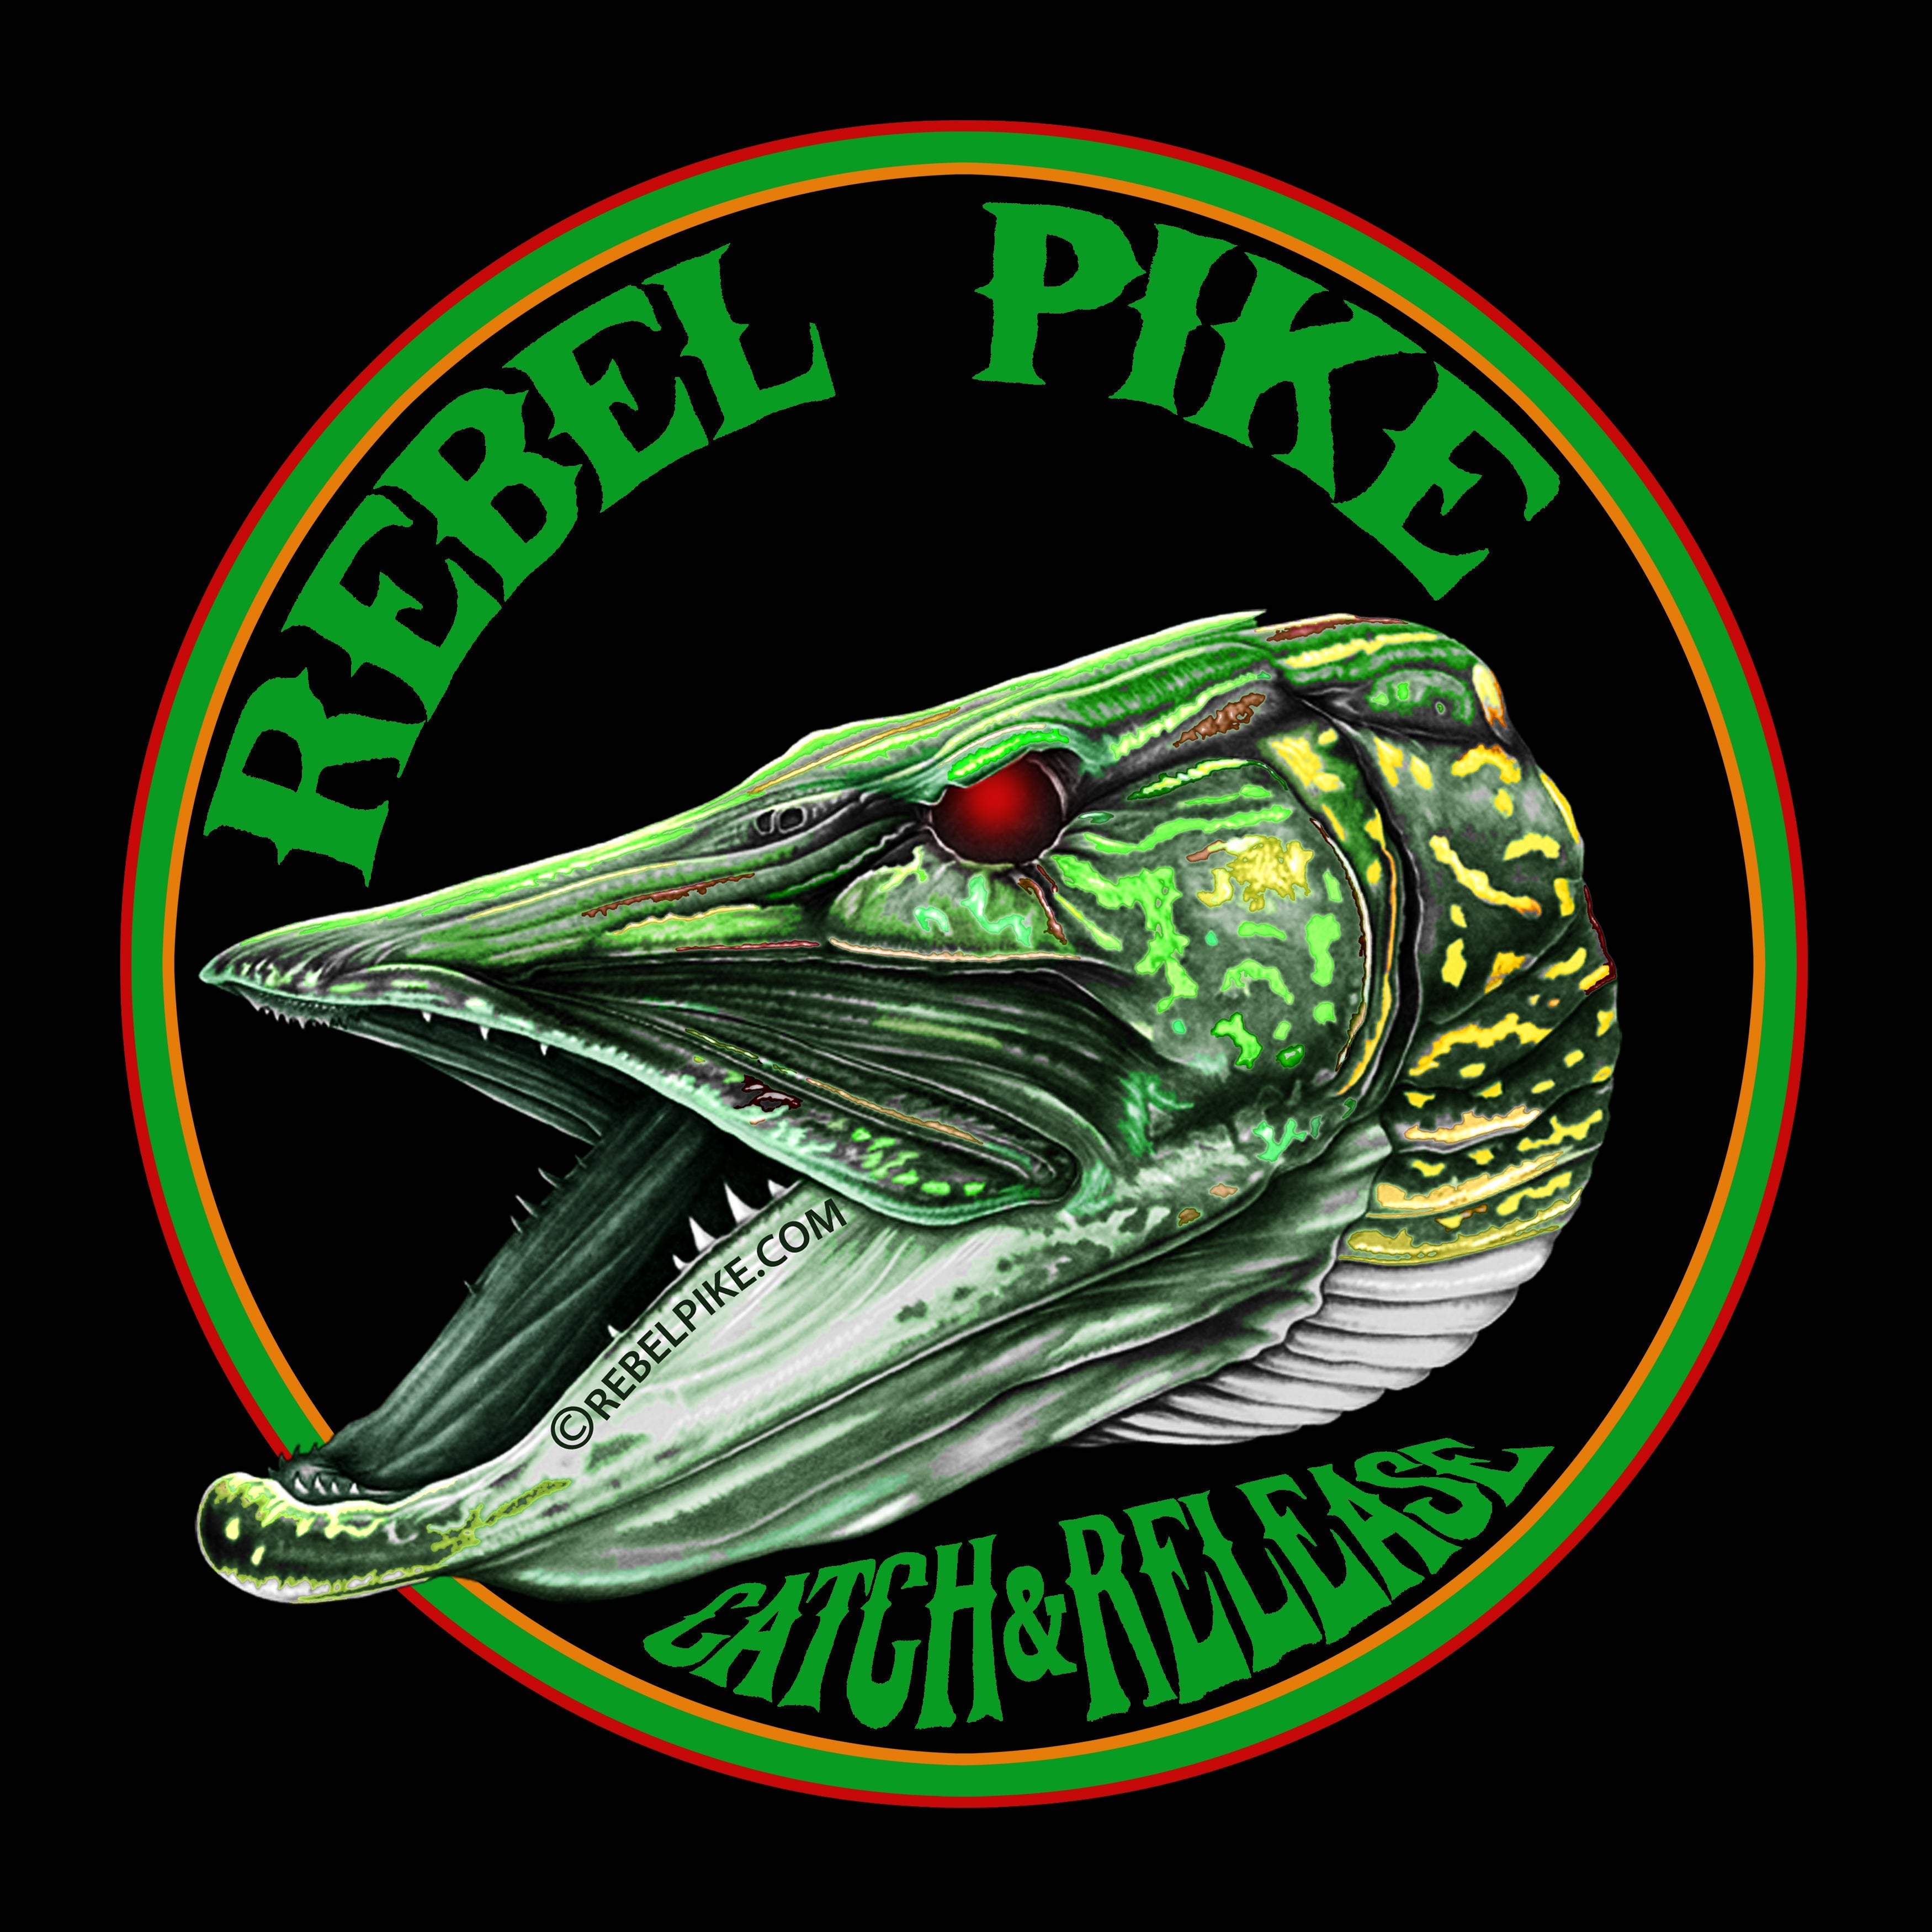 Rebel Pike Kipper Fish Oil Flavour 120ml